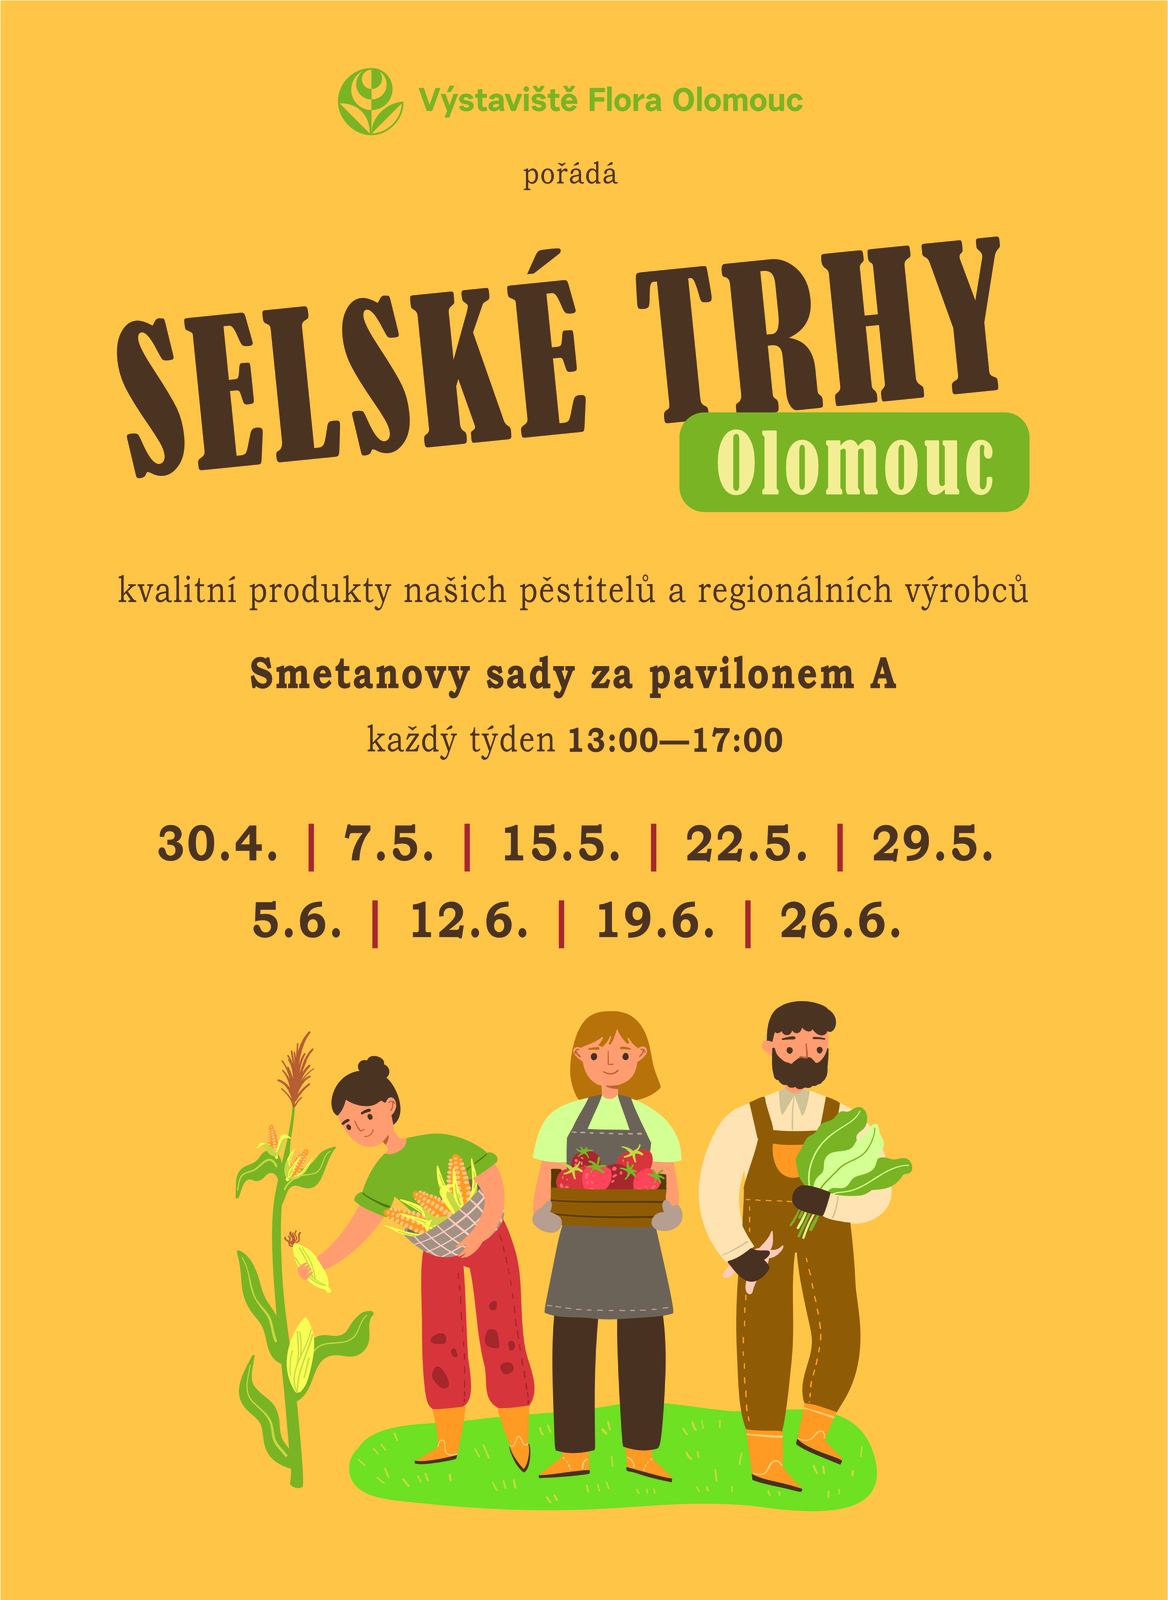 Pravidelné selské trhy na výstavišti Flora Olomouc - zahájení od 30.4.